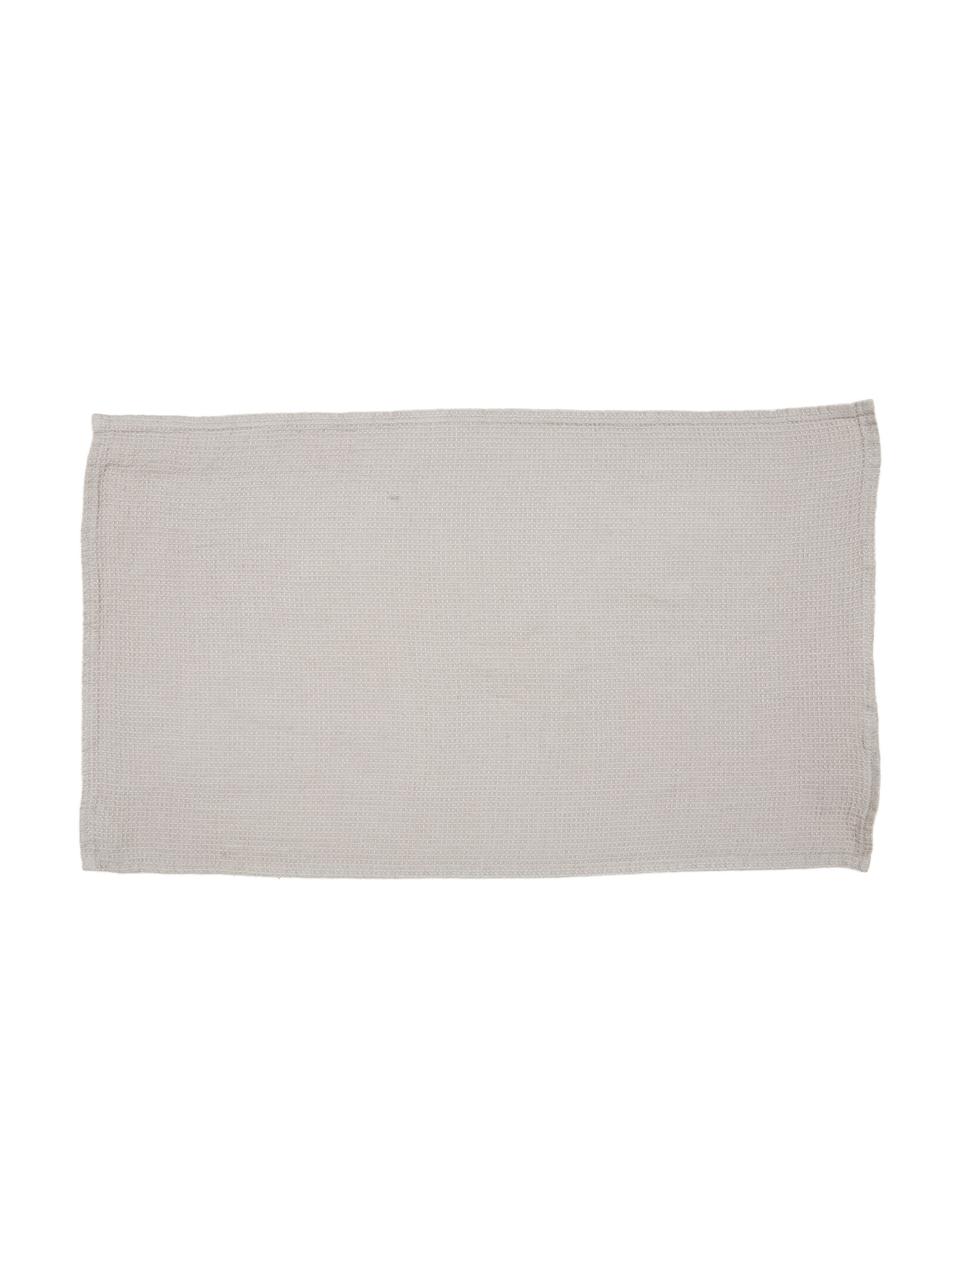 Leichtes Leinen-Handtuch Java in verschiedenen Größen, Waffelpiqué, Beige, Handtuch, B 50 x L 100 cm, 2 Stück